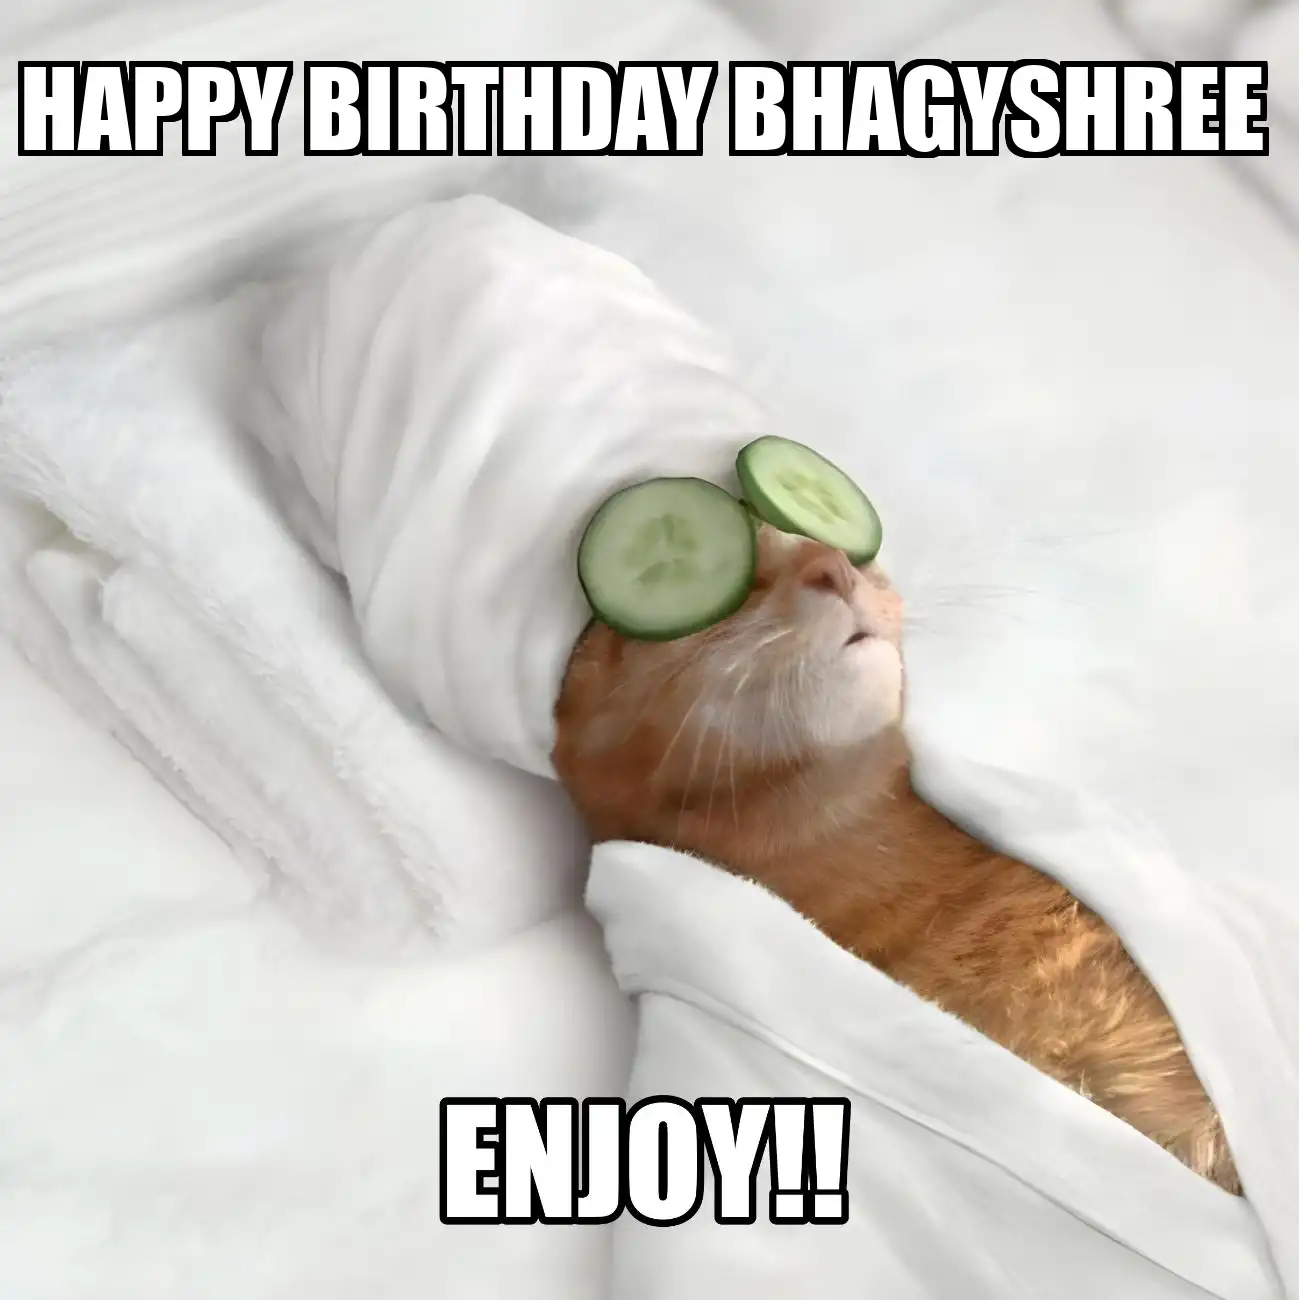 Happy Birthday Bhagyshree Enjoy Cat Meme